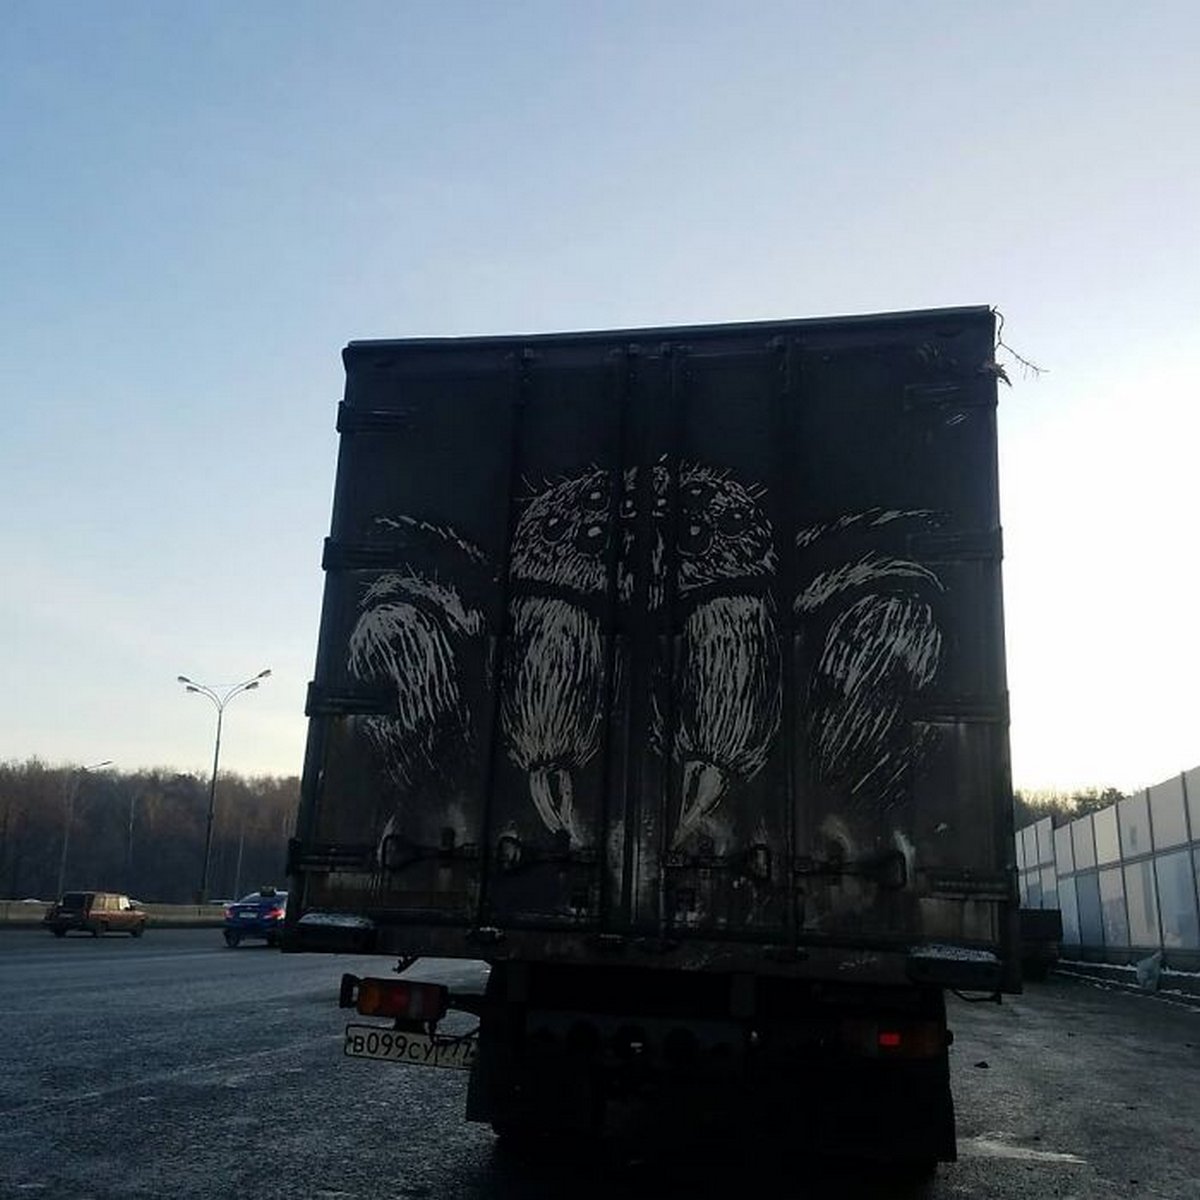 Des propriétaires de camions sales trouvent des dessins incroyables sur leurs véhicules créés par cet artiste